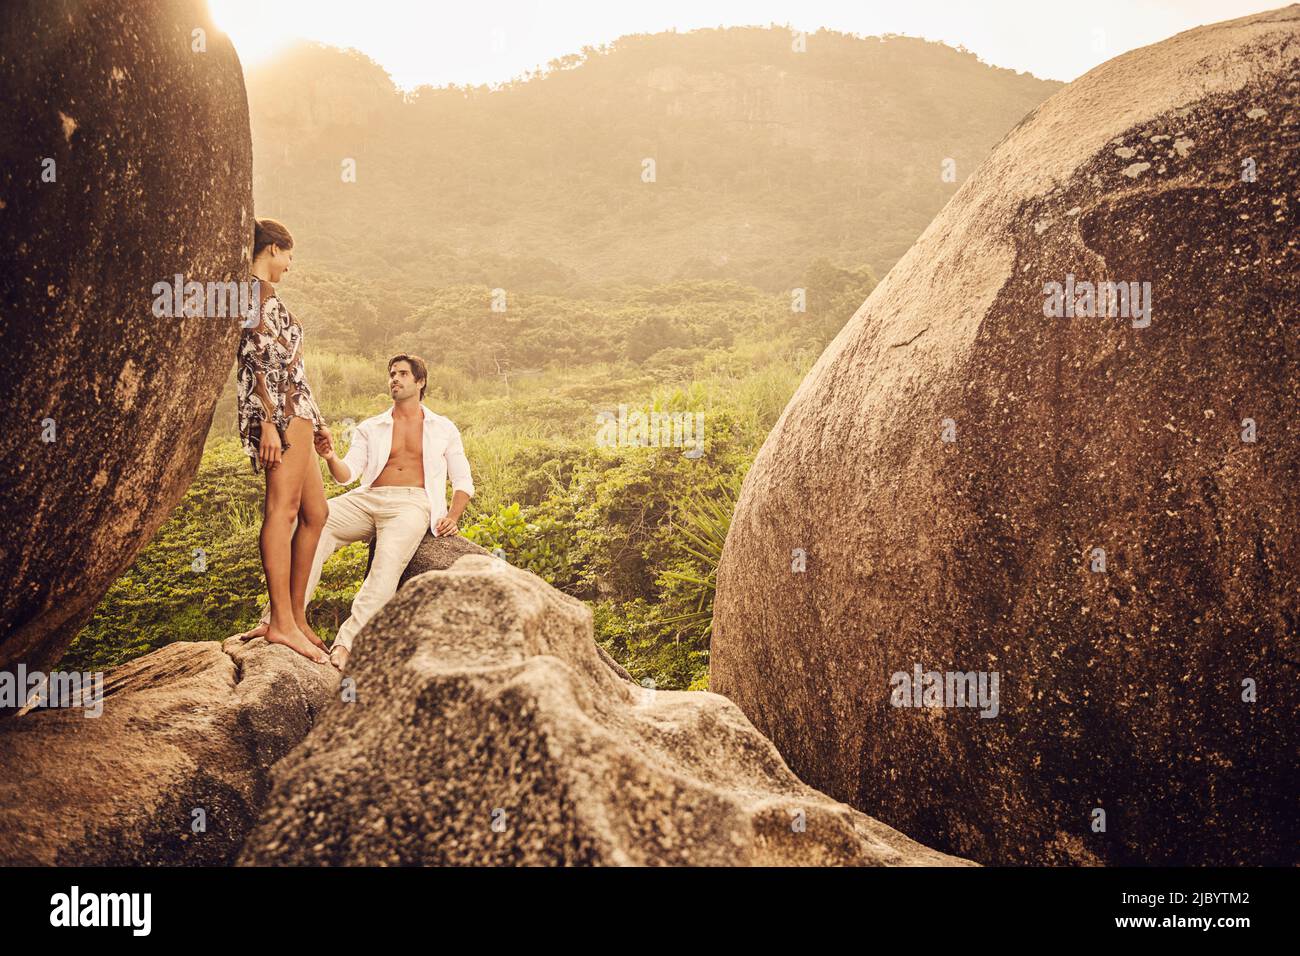 Hispanic couple on boulder Stock Photo